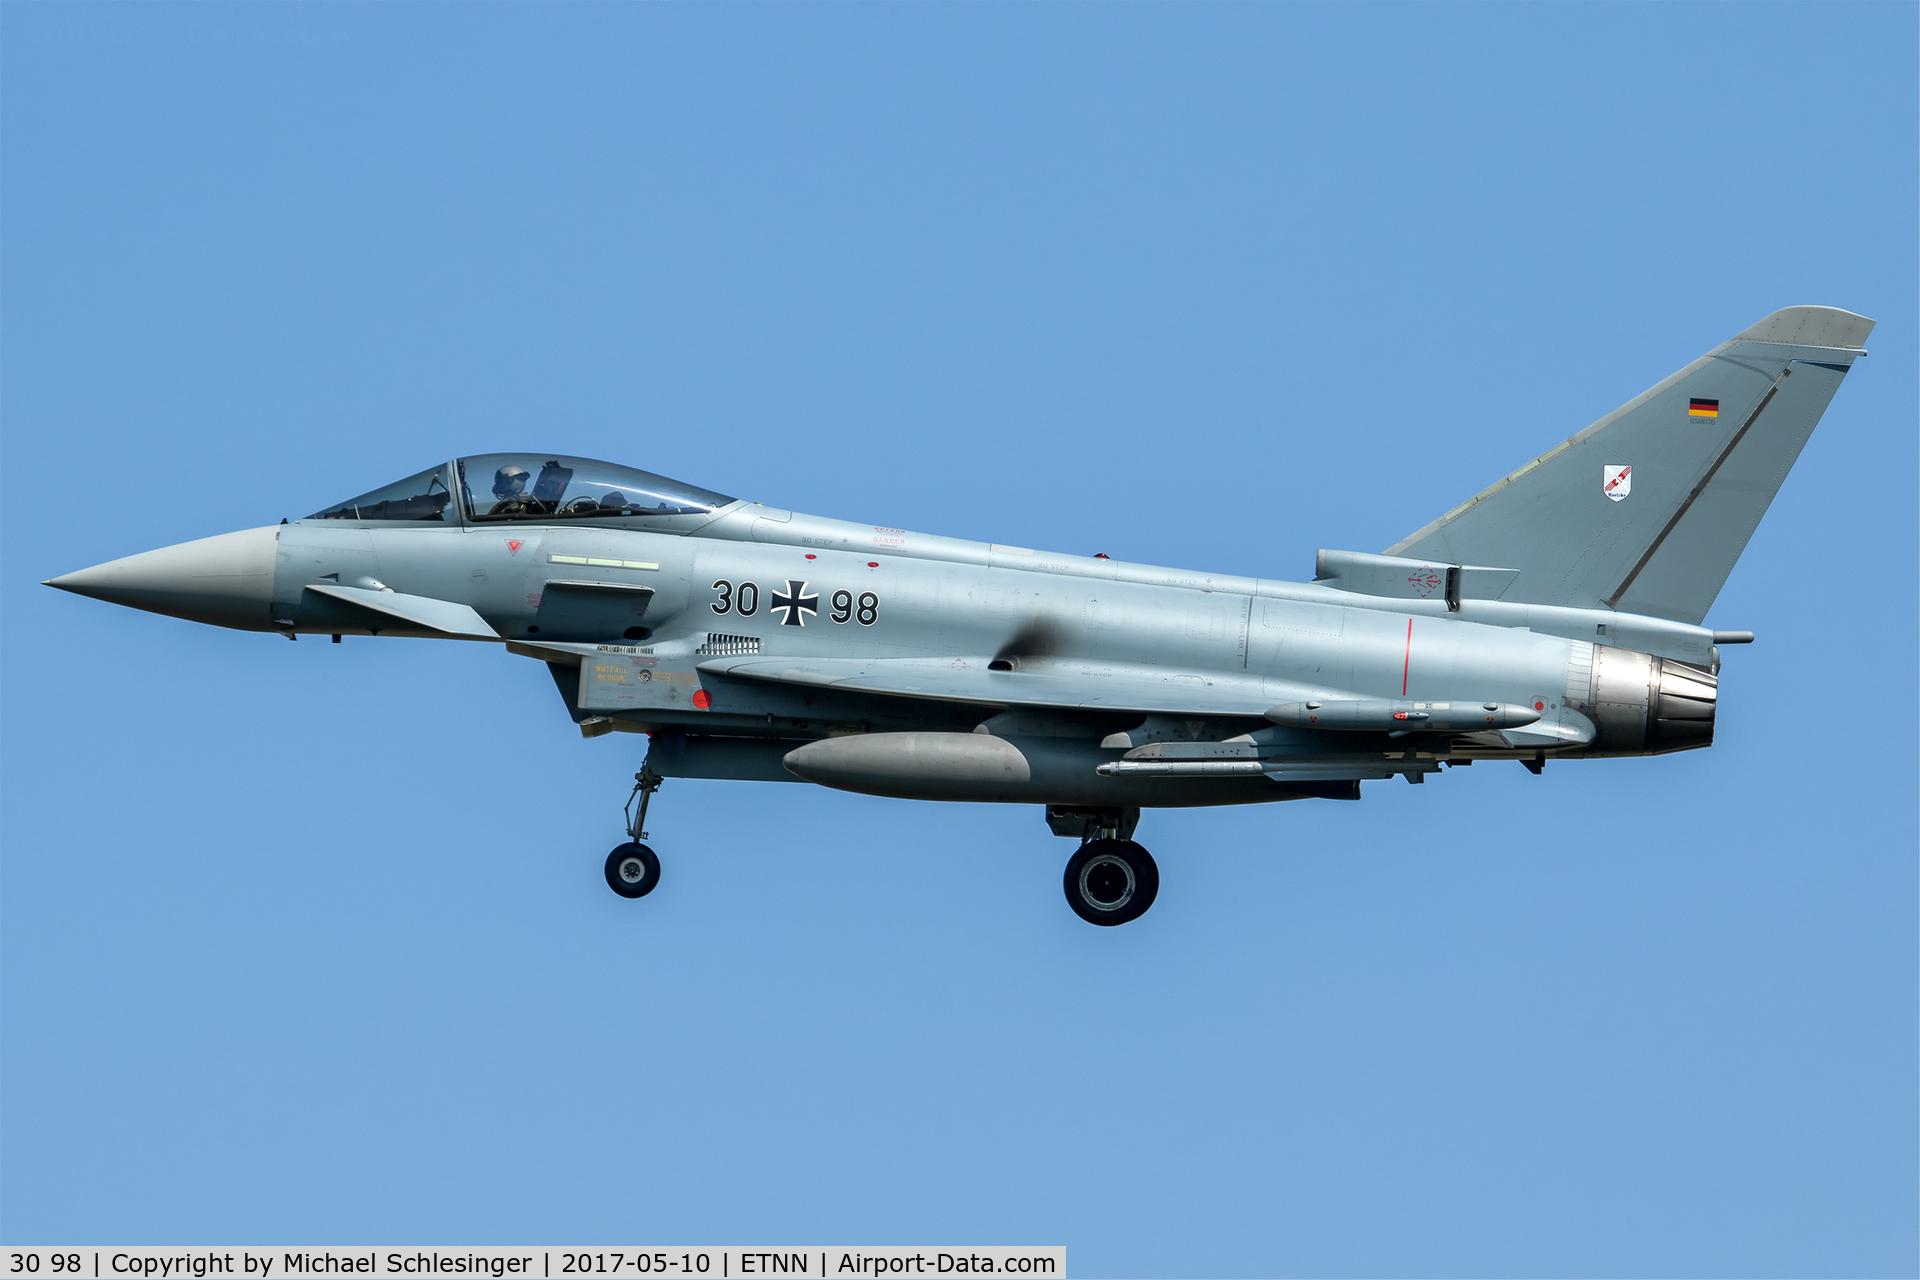 30 98, Eurofighter EF-2000 Typhoon S C/N GS076, 30+98 - Eurofighter EF-2000 Typhoon S - German Air Force